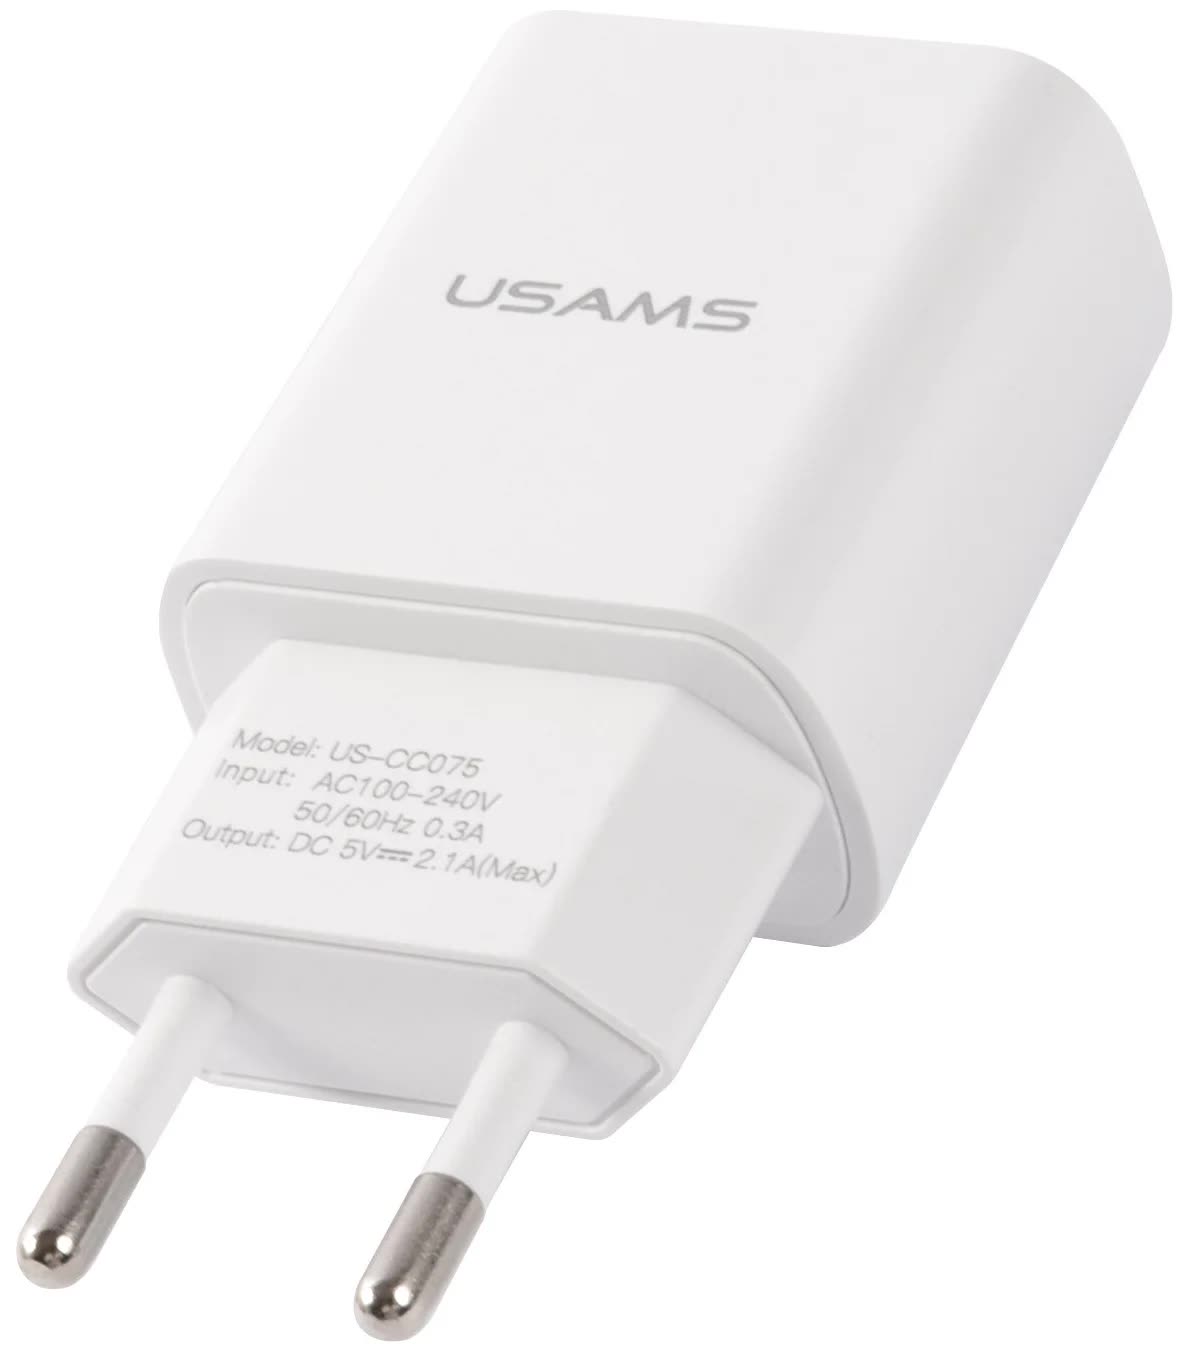 Сетевое зарядное устройство USAMS - (Модель T21 Charger kit) 1 USB T18 2,1A + кабель Lightning 1m, белый (T21OCLN01) цена и фото